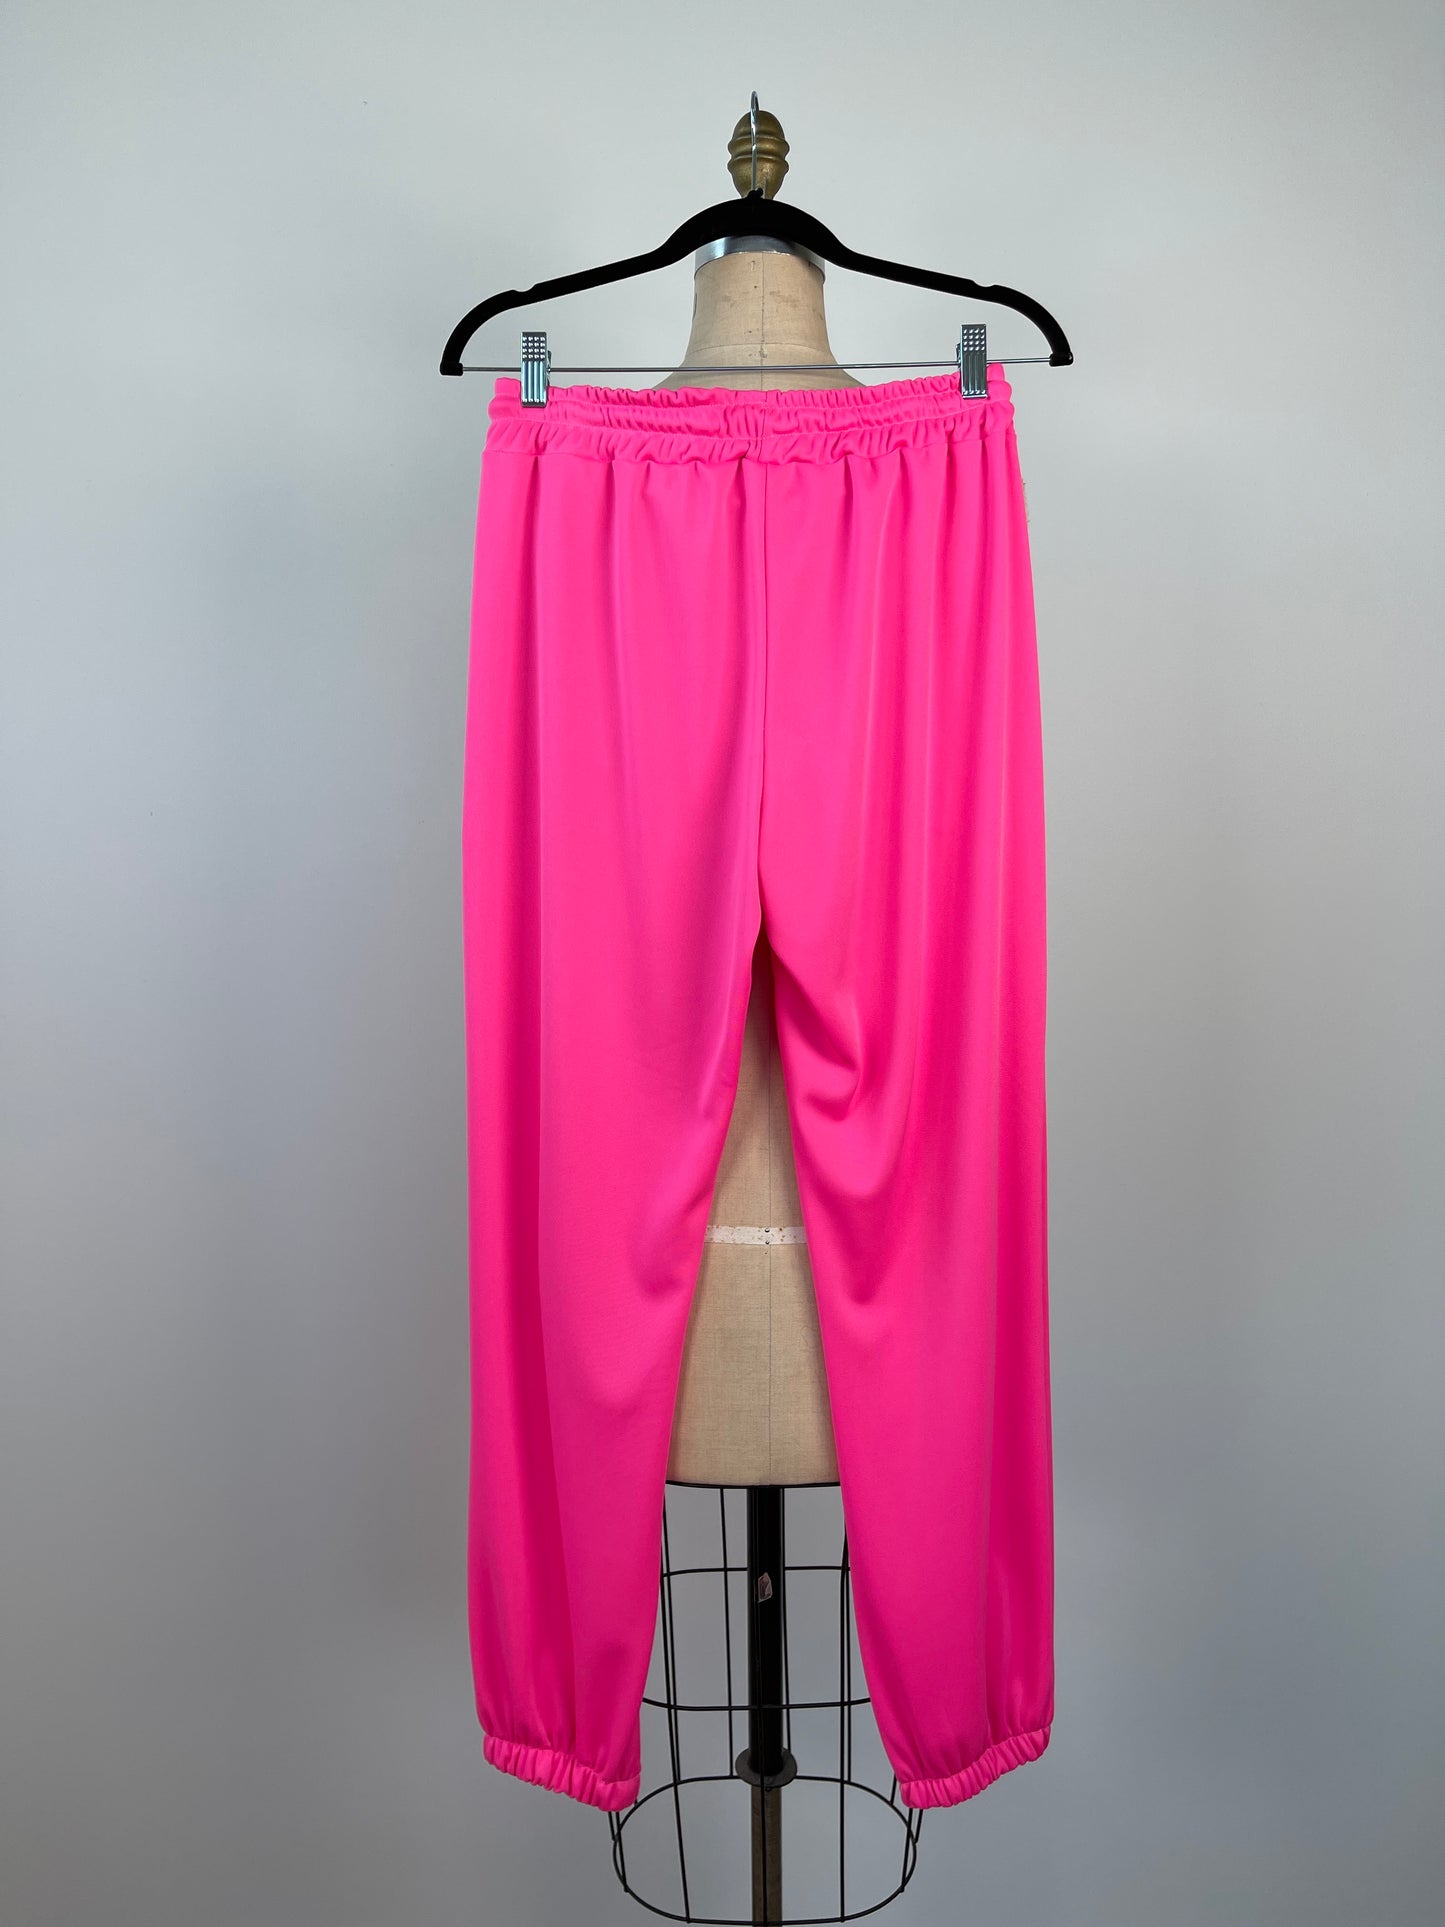 Pantalon jogger rose néon à genoux ouverts (S/M)